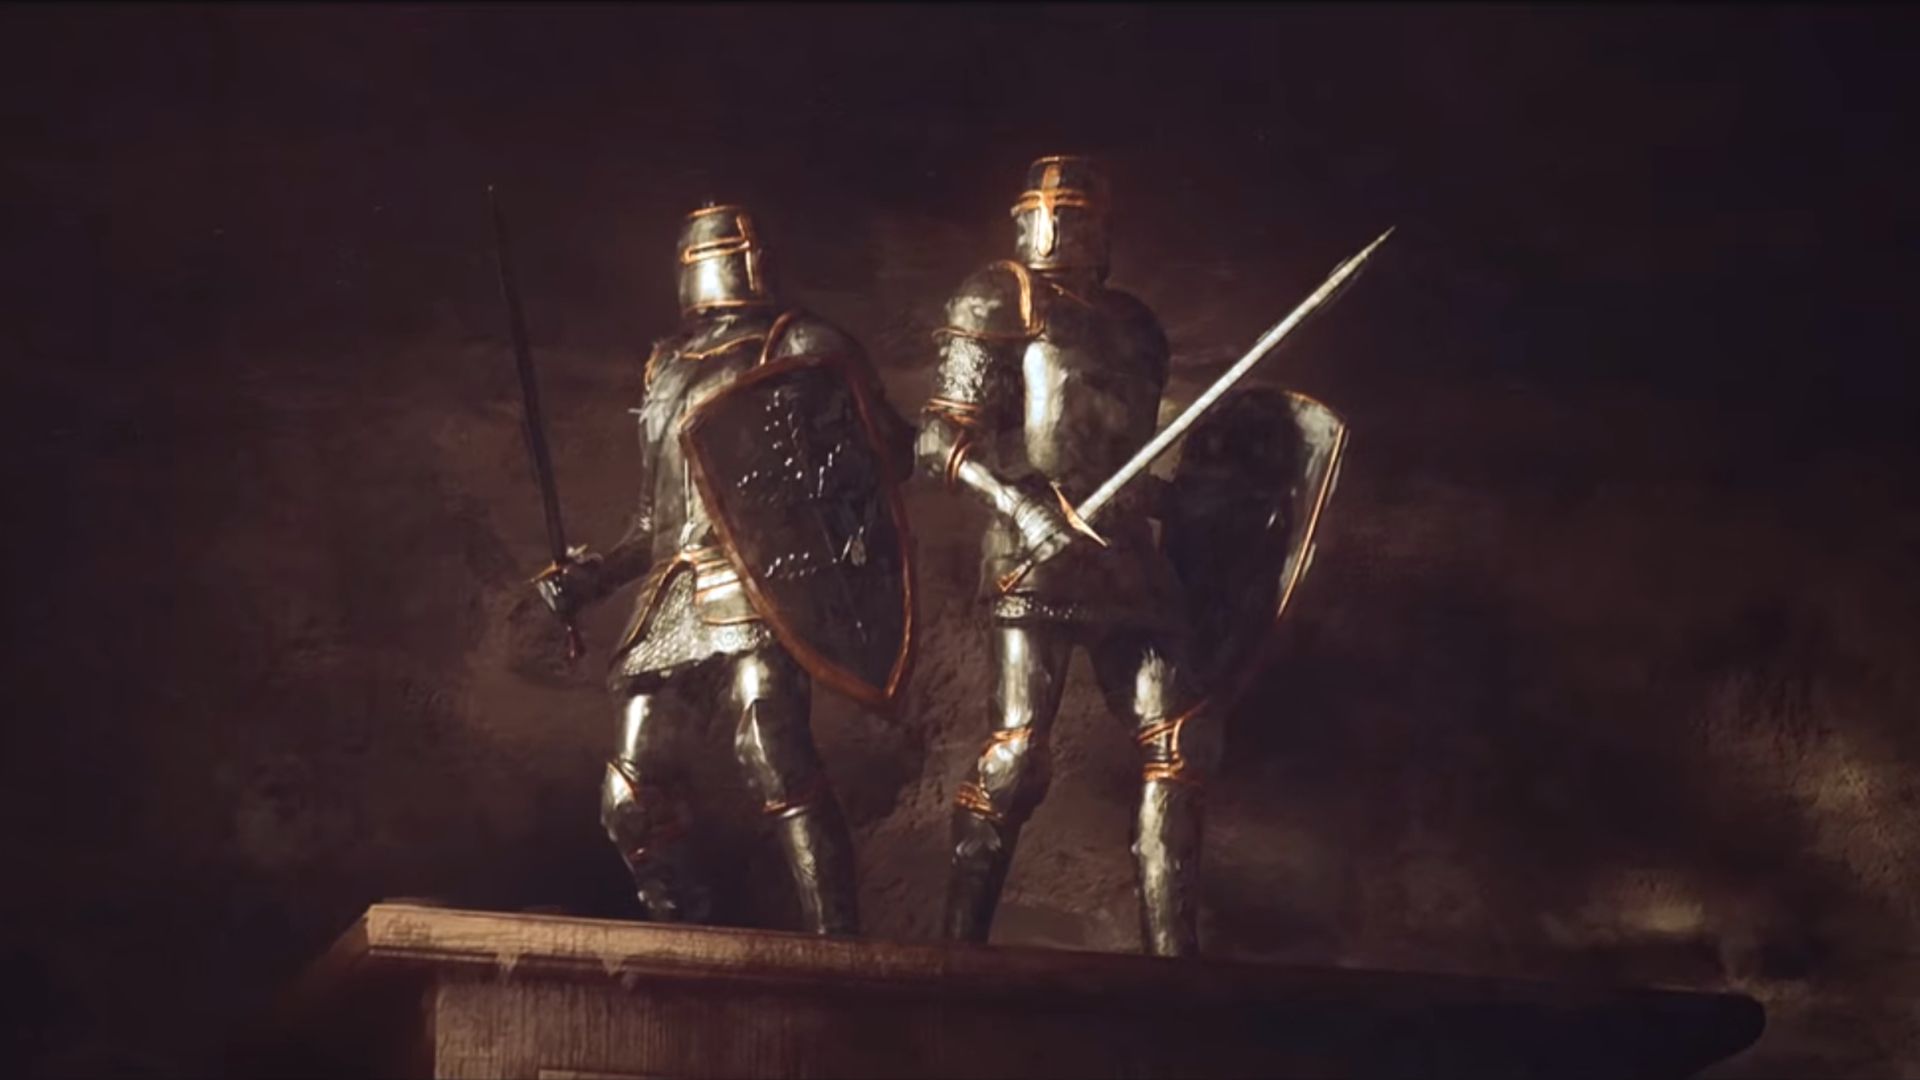 Crusader Kings 3 has a procedural sex scene generator